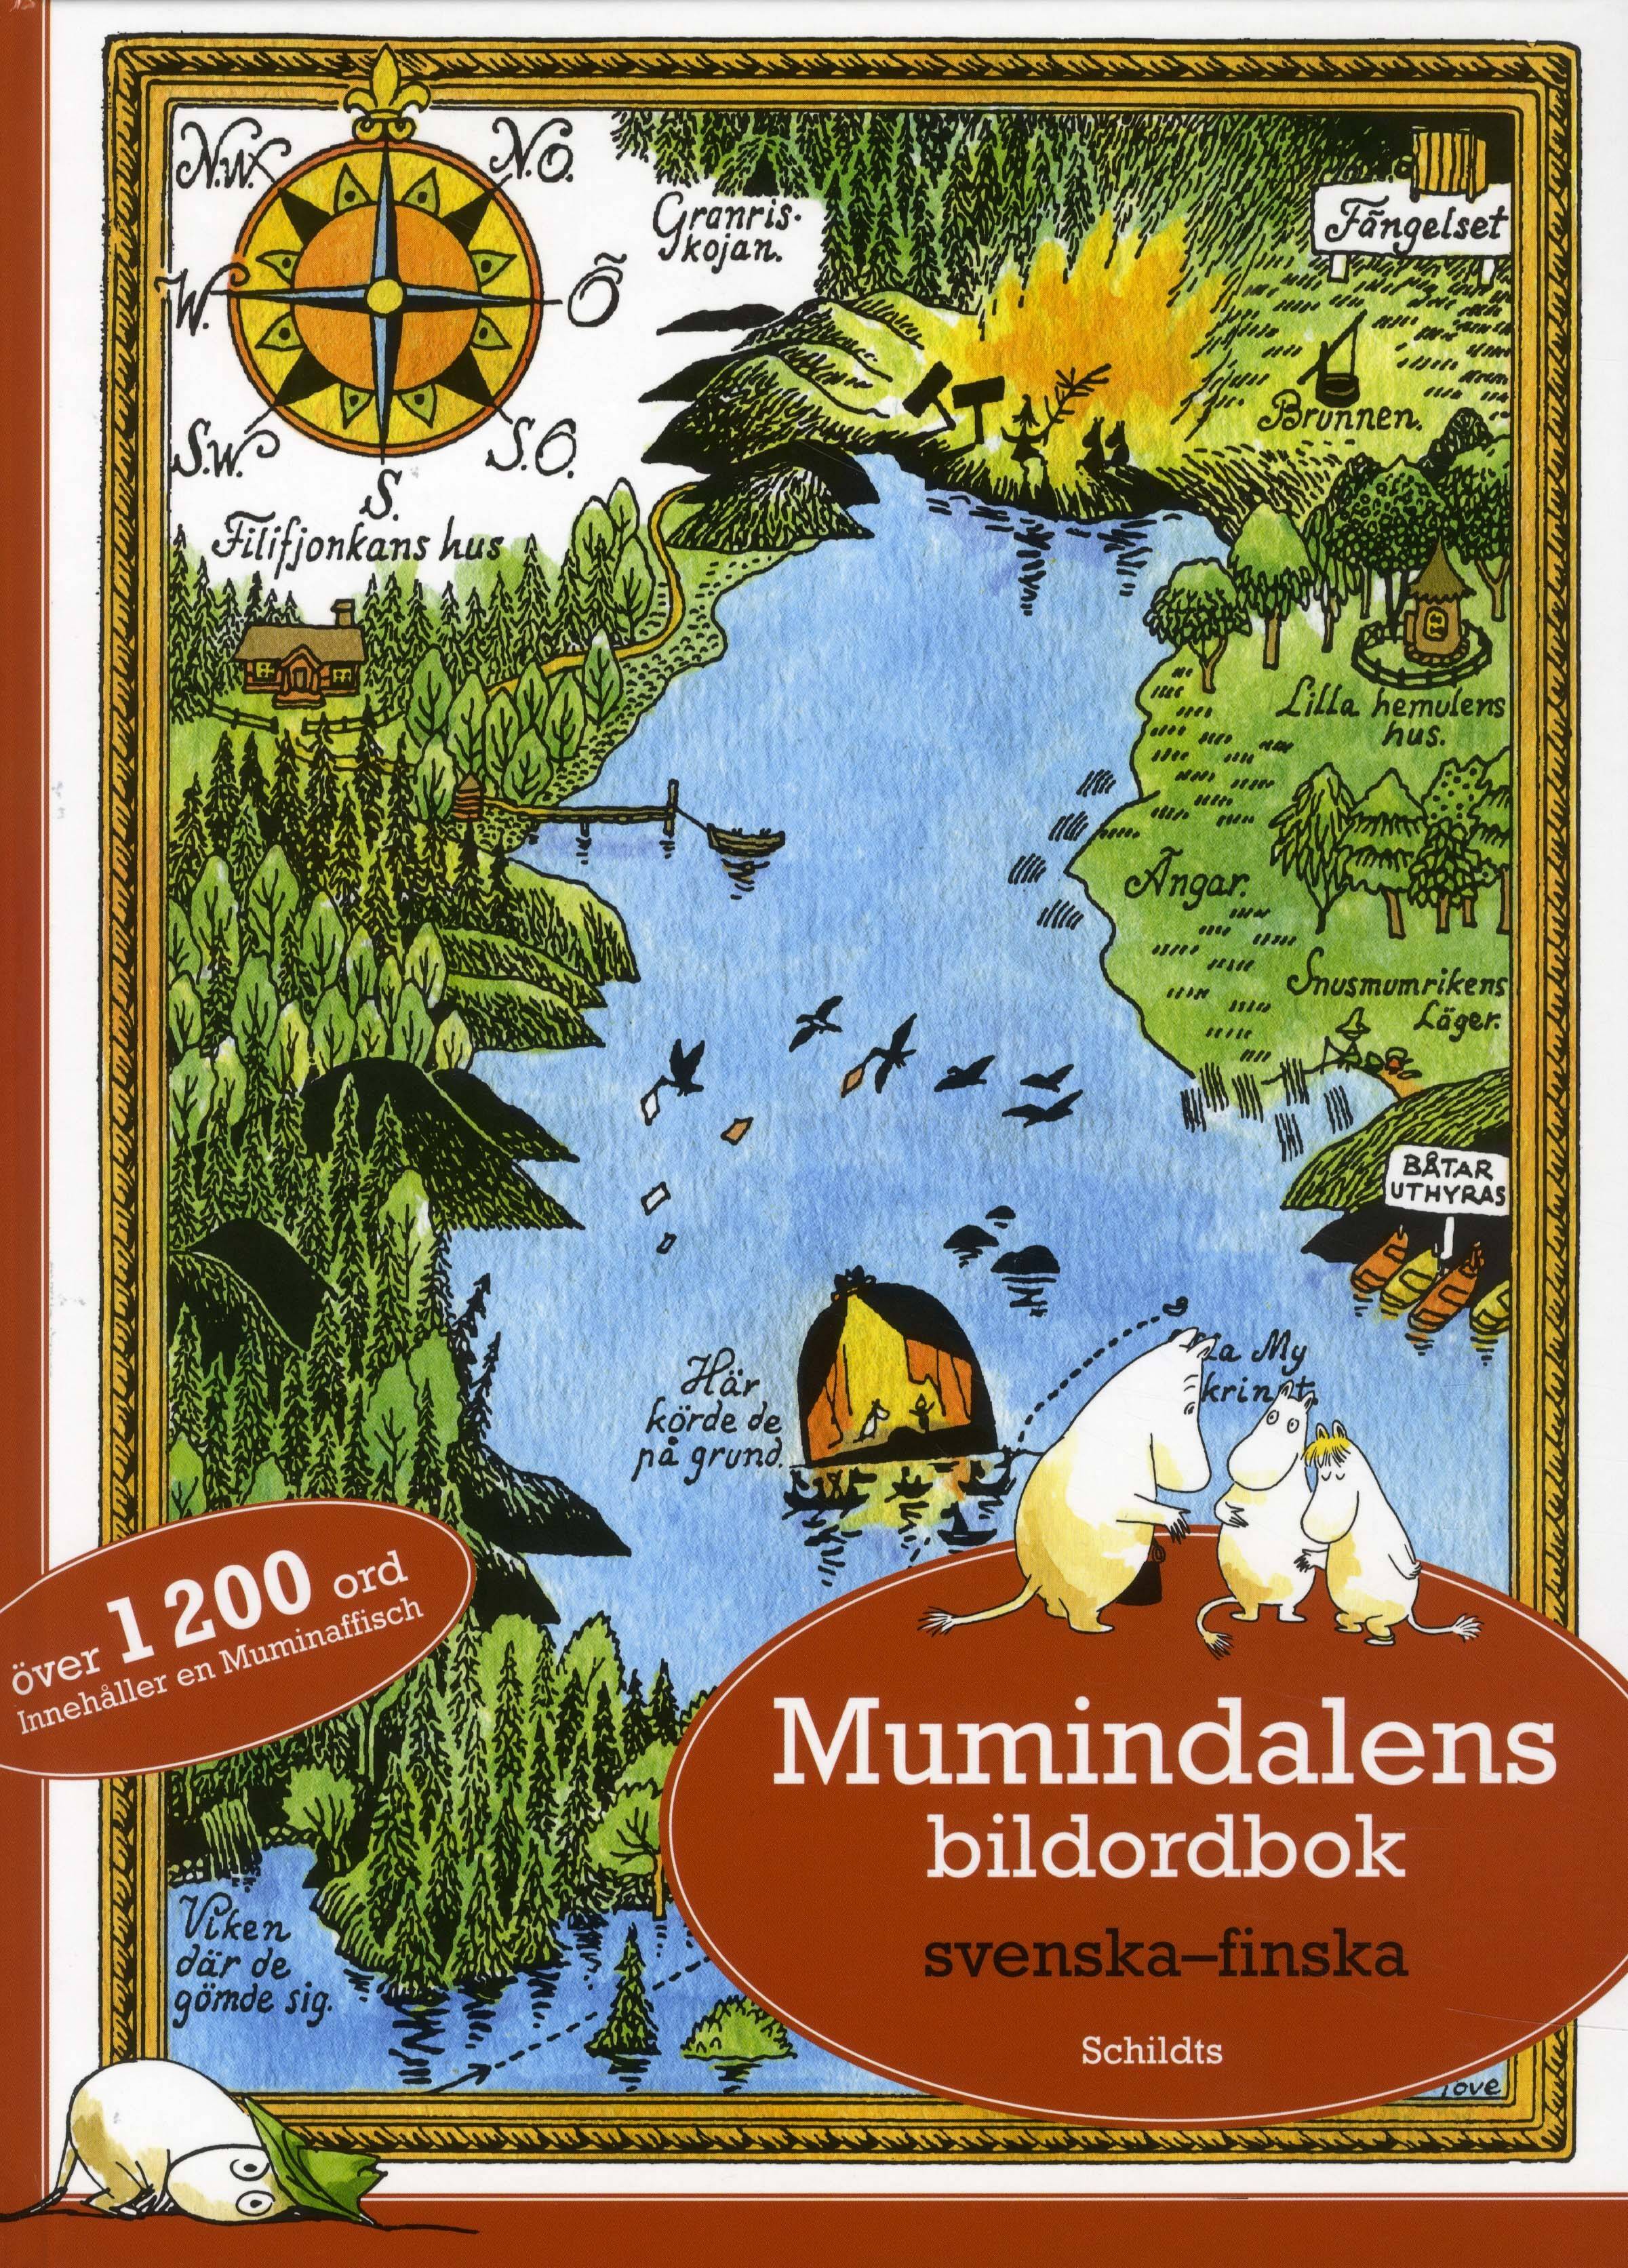 Mumindalens bildordbok svenska-finska